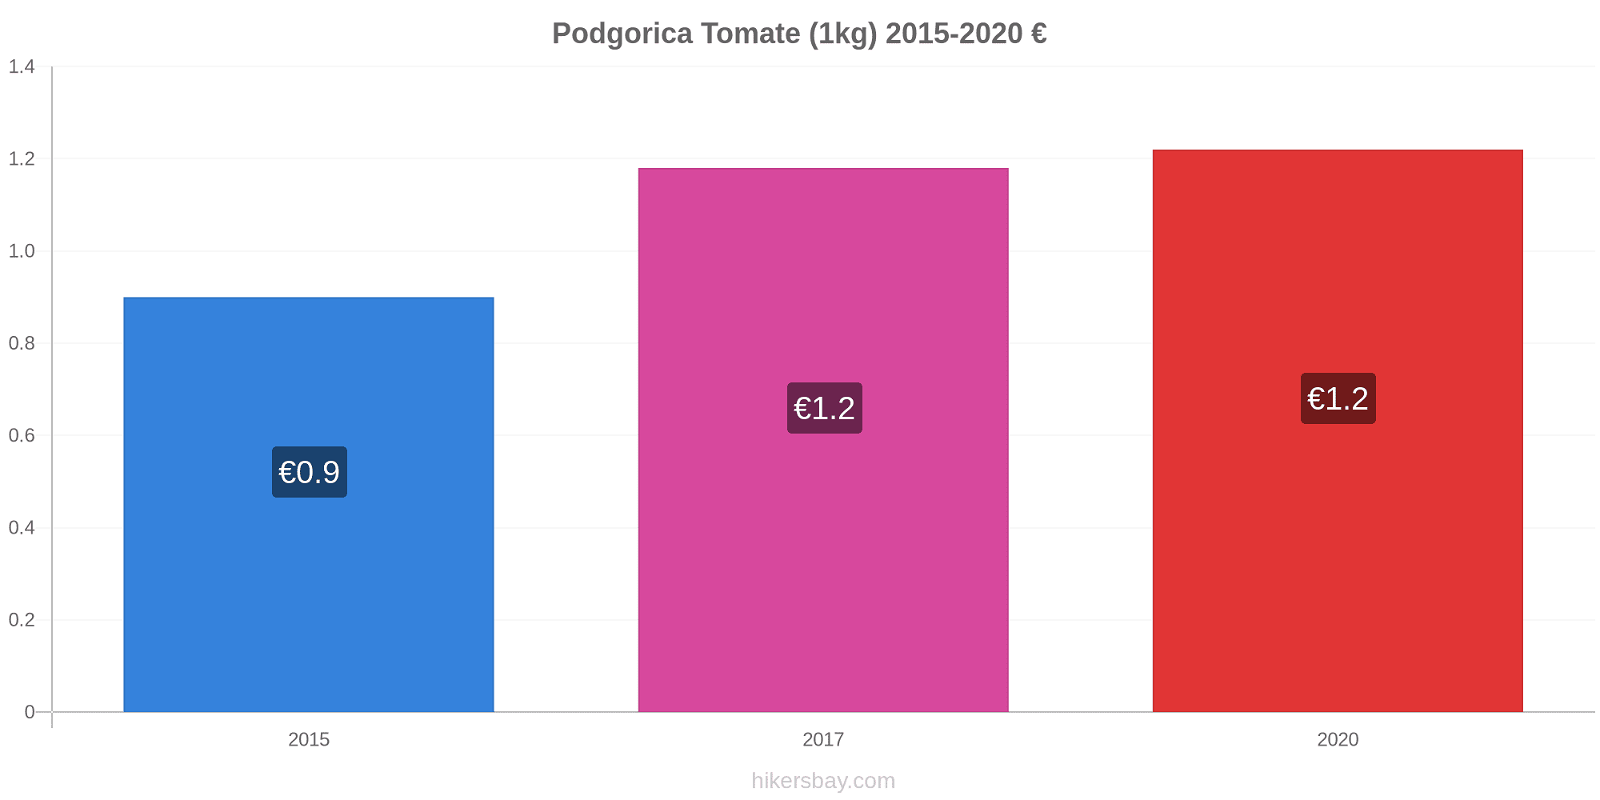 Podgorica cambios de precios Tomate (1kg) hikersbay.com